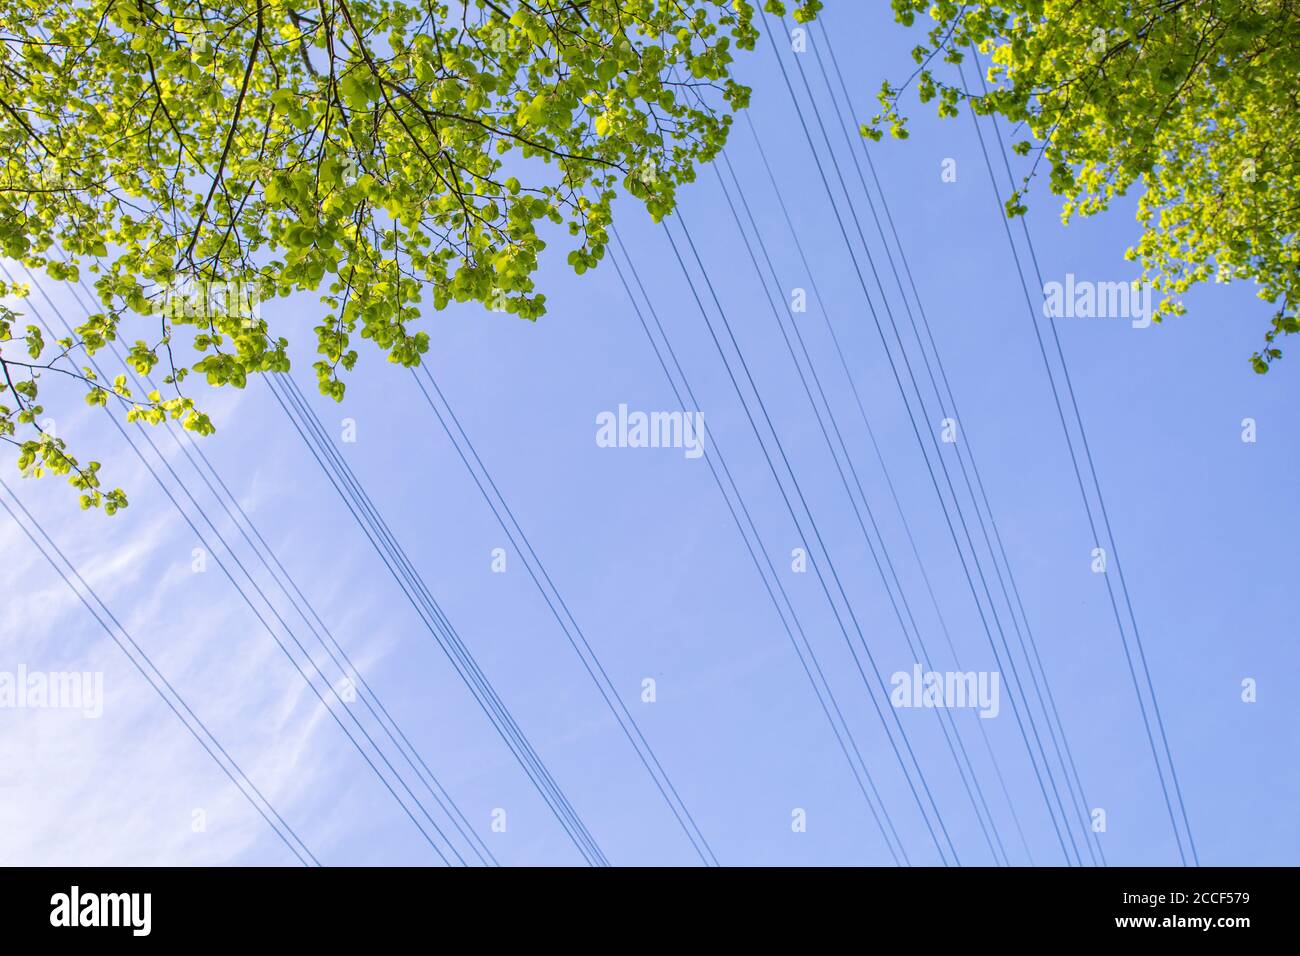 Lignes électriques provenant de lignes aériennes et de feuillage provenant d'un arbre au printemps Banque D'Images